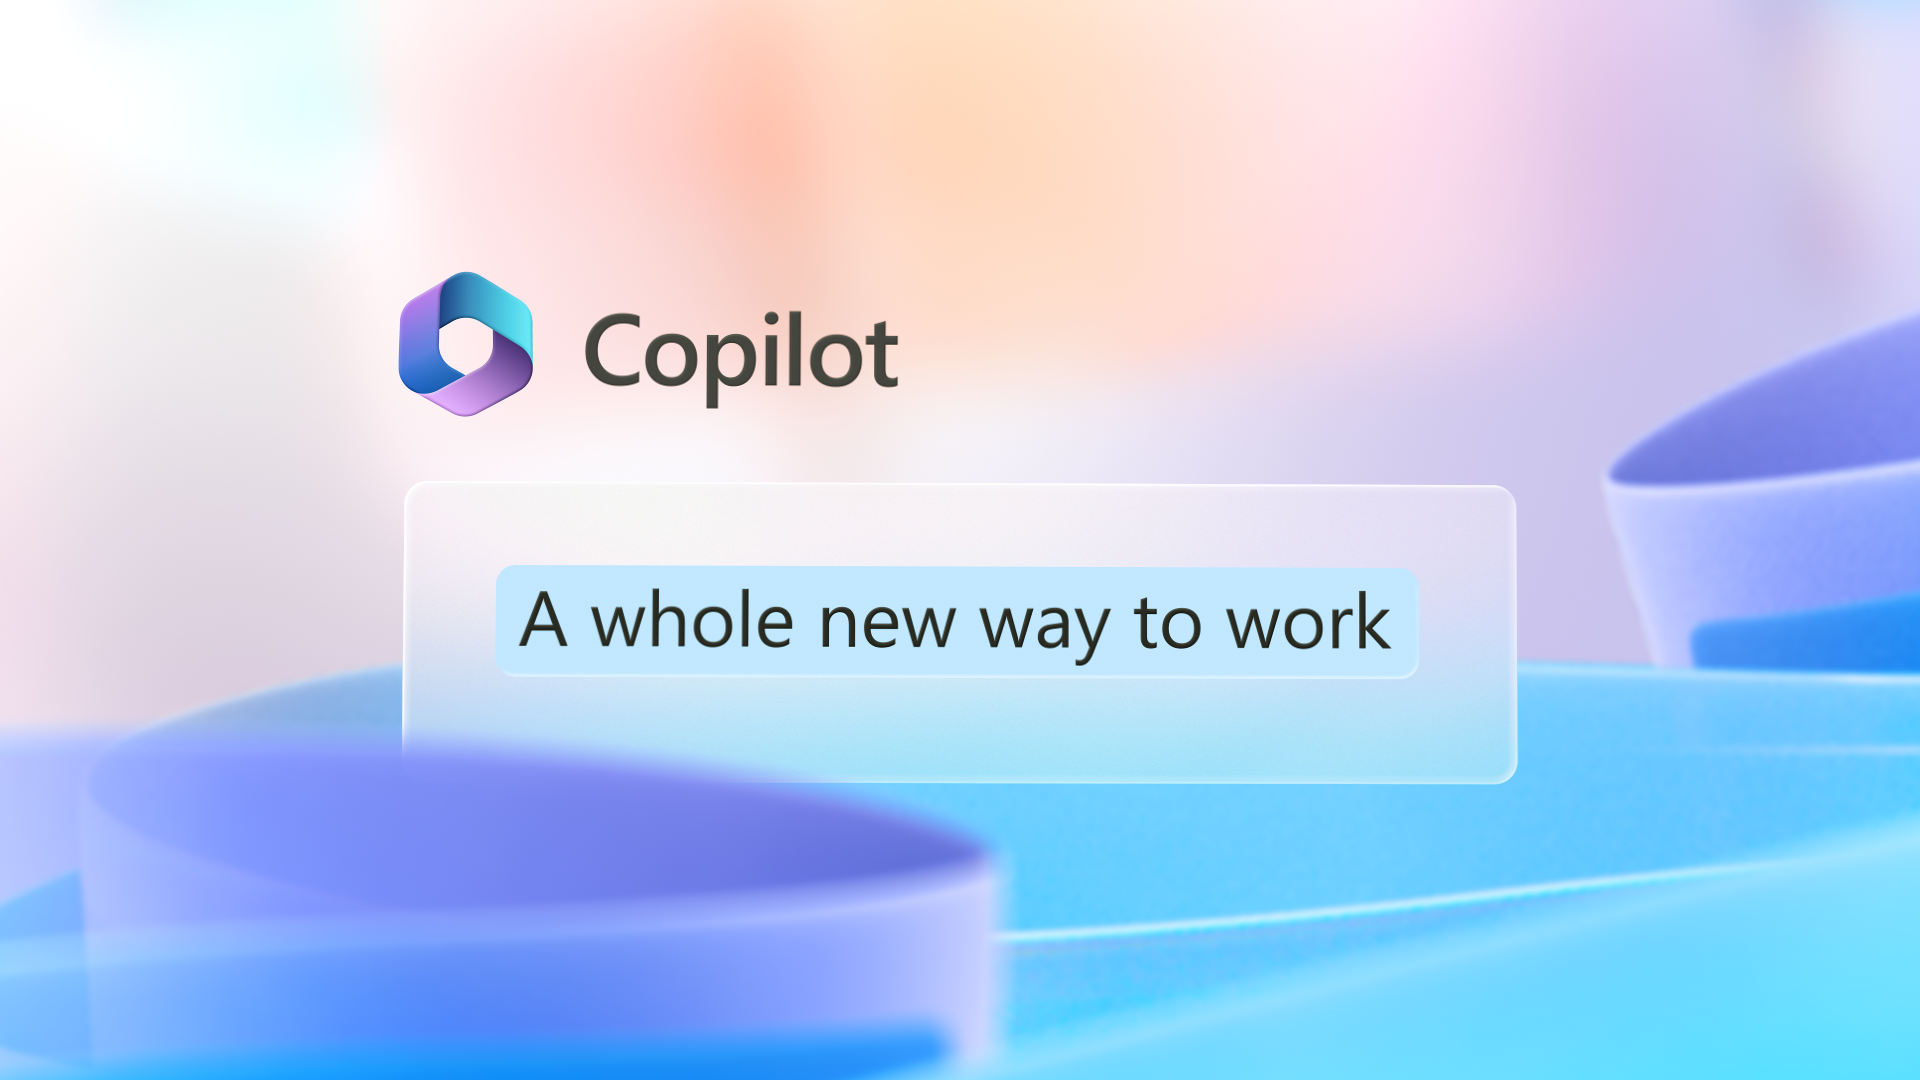 לתמונה הגרפית יש סמל Copilot עם המילים דרך חדשה מאוד לעבודה.